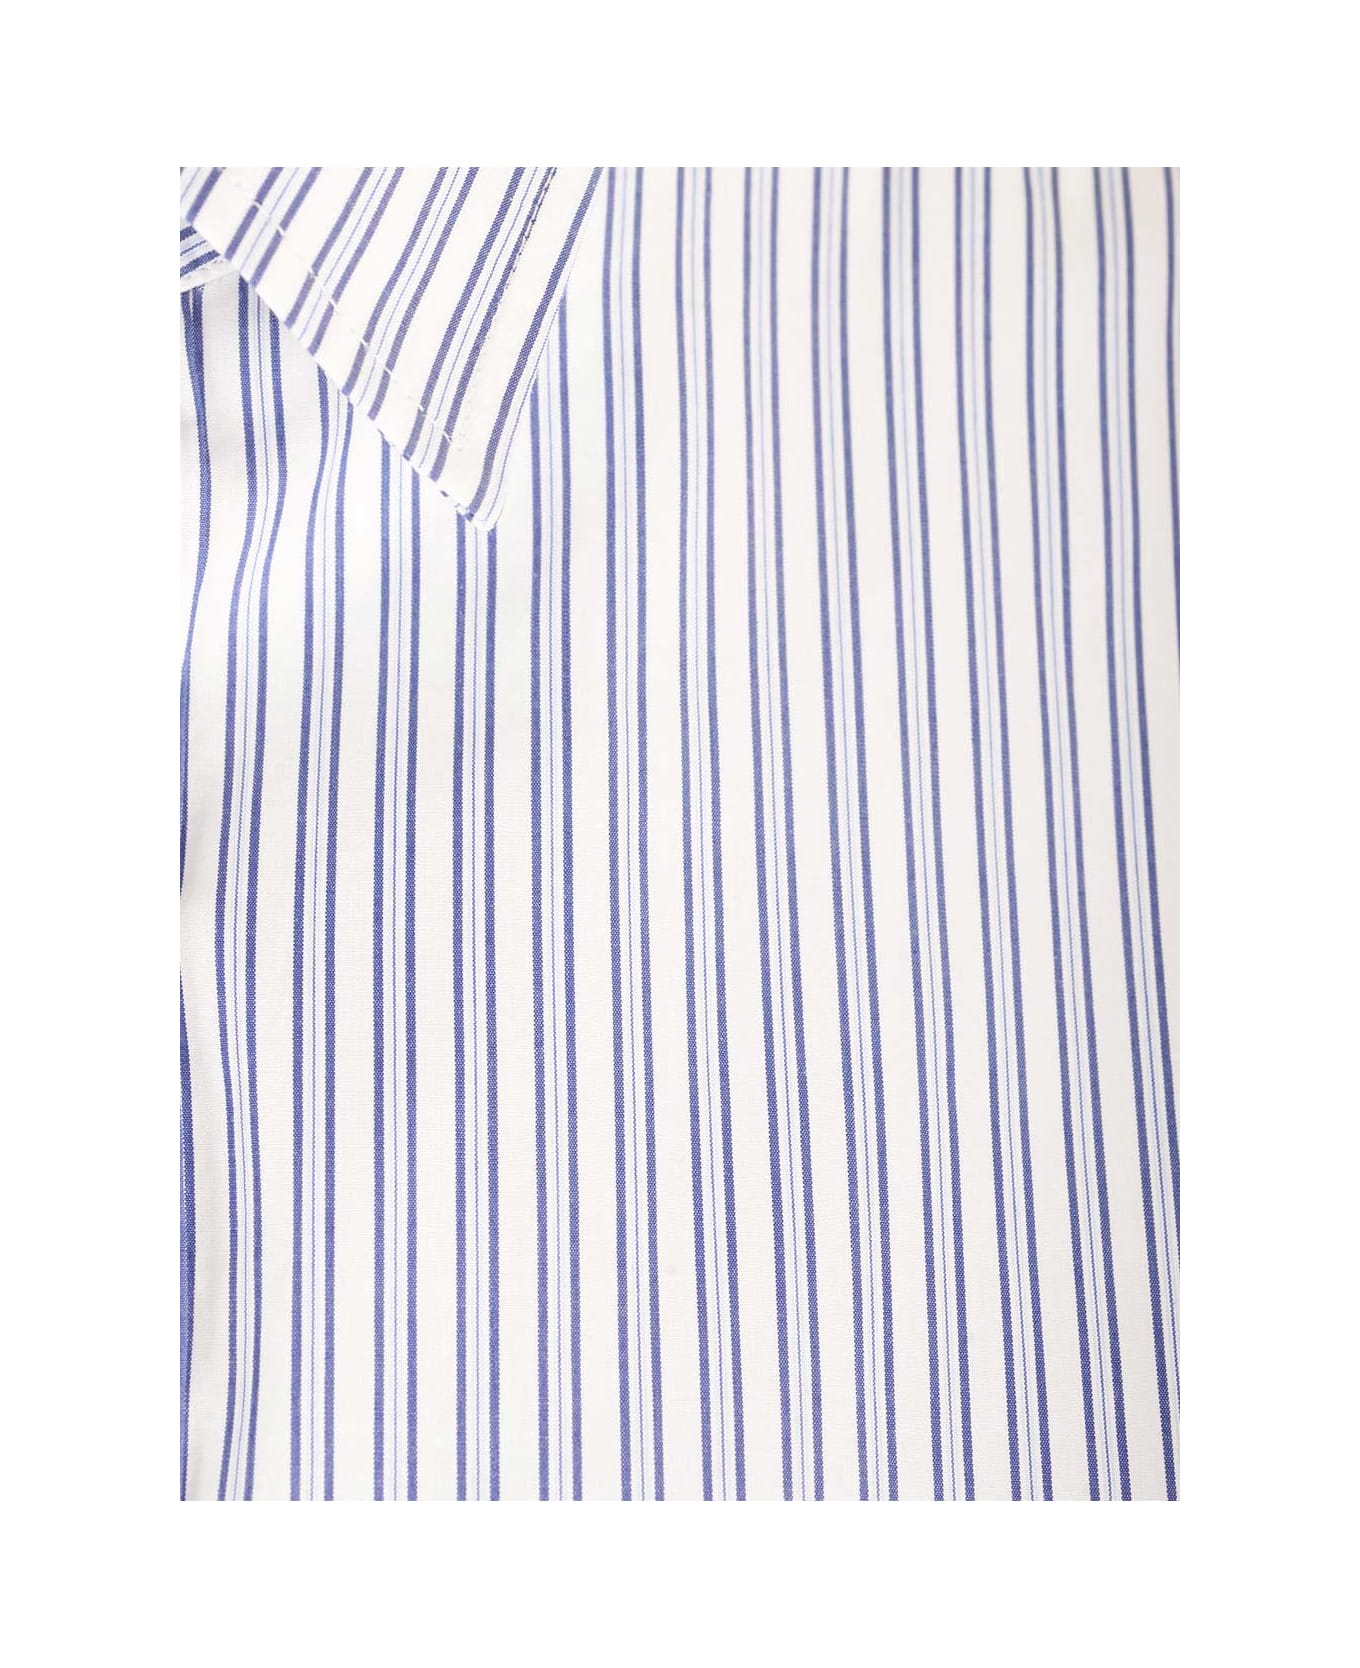 Maison Margiela Striped Shirt - BLUE WHITE STRIPES シャツ